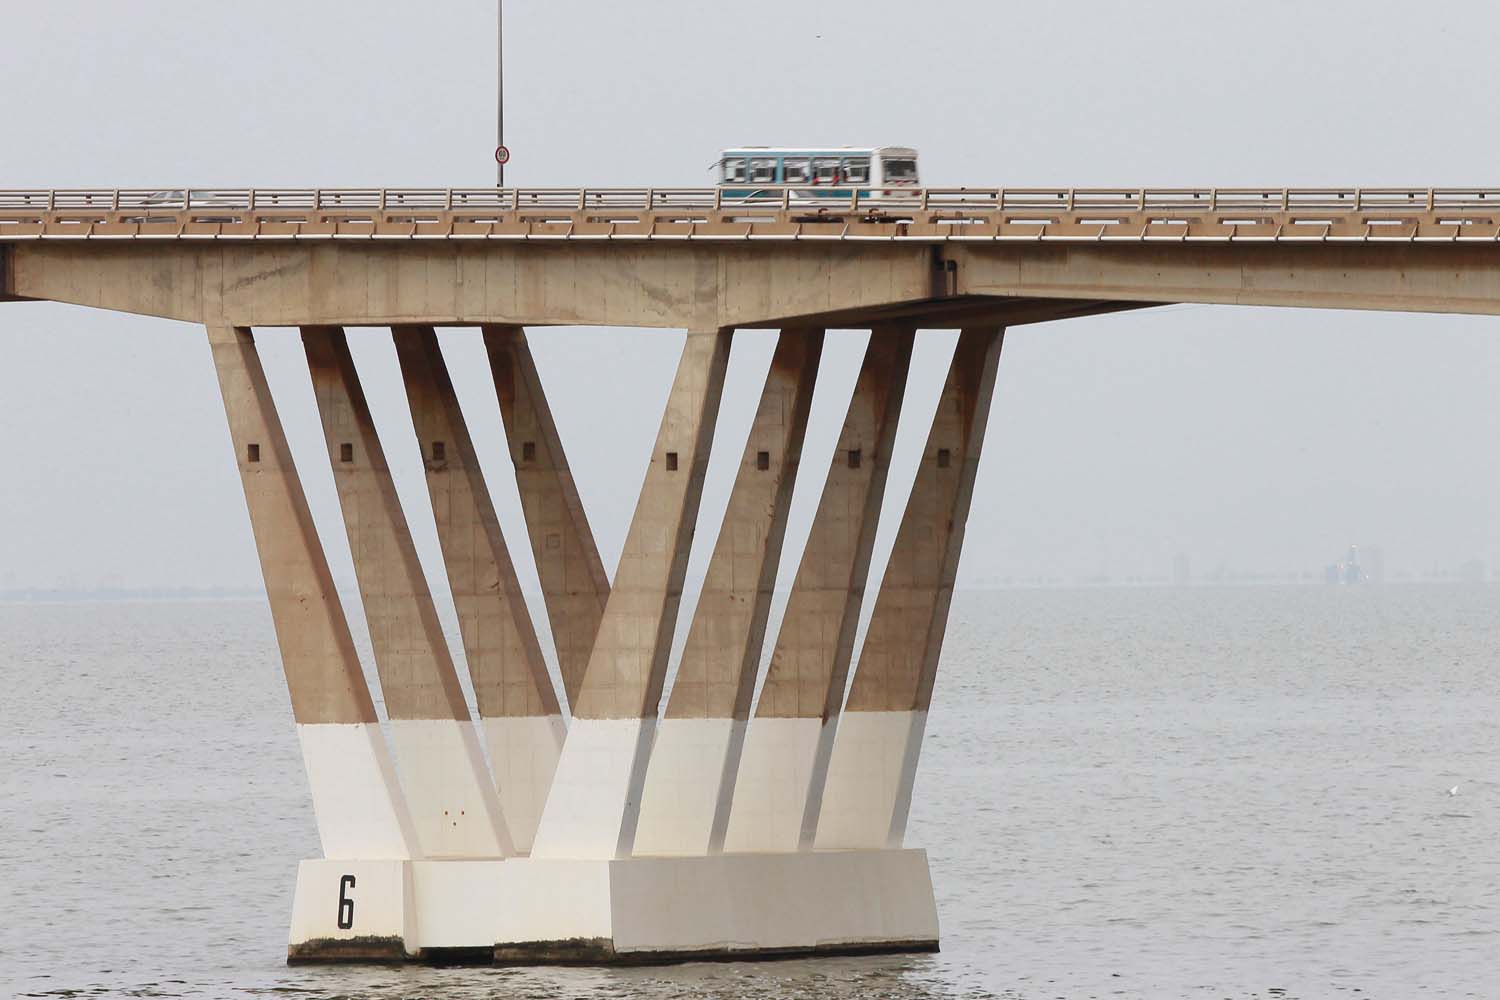 Incidente en puente gemelo de Génova empeora la crisis en Maracaibo